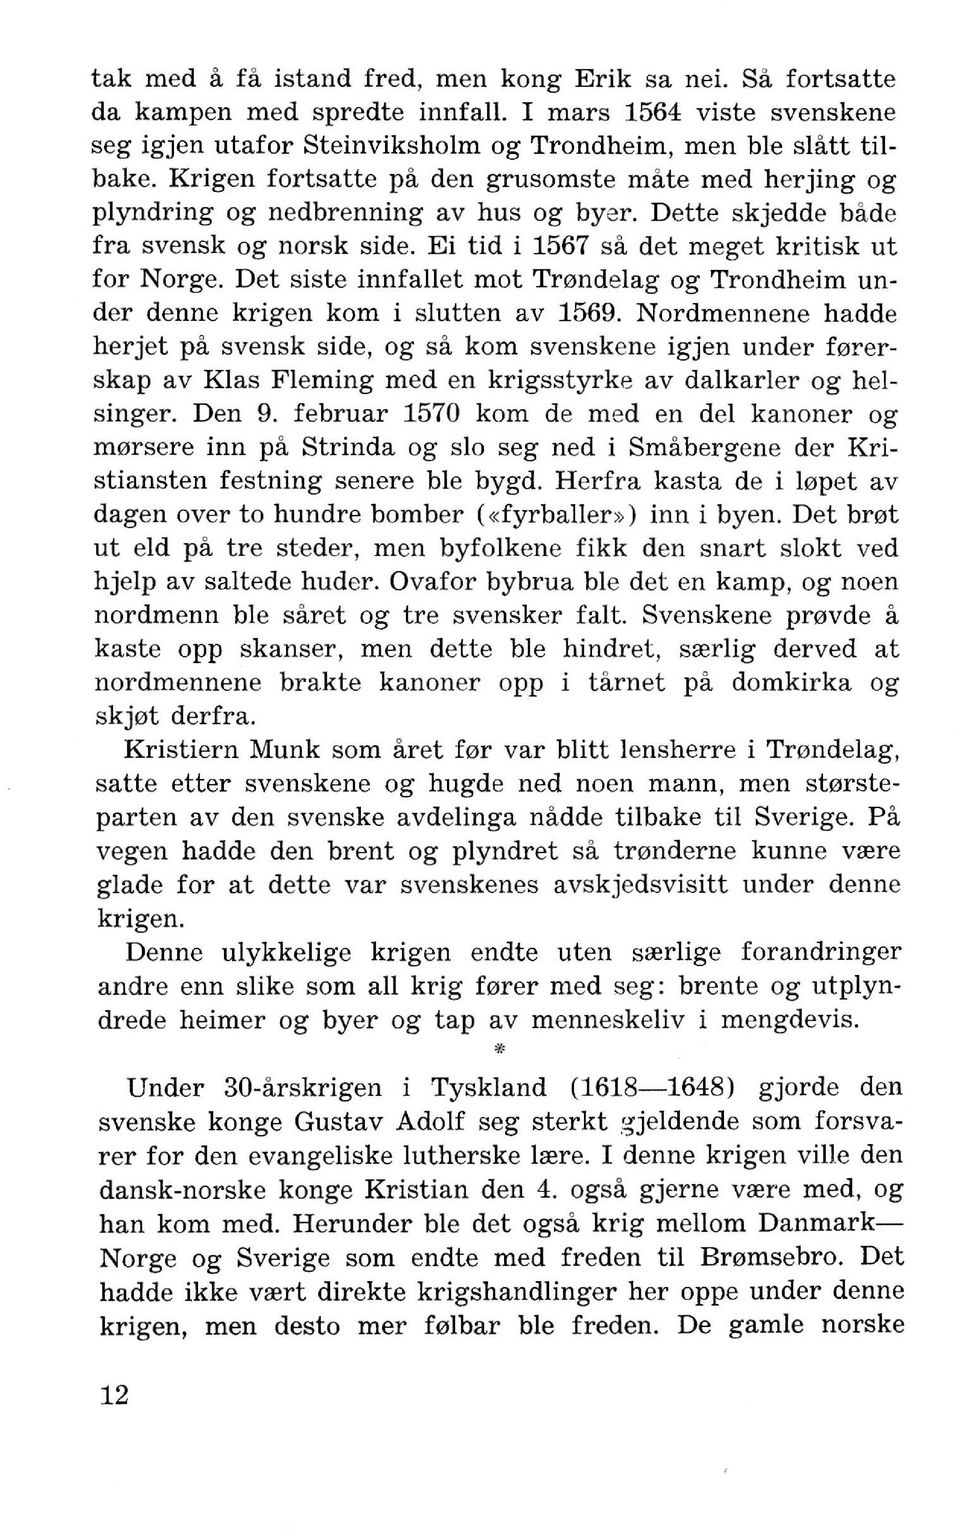 Det siste innfallet mot Tmndelag og Trondheim under denne krigen kom i slutten av 1569.